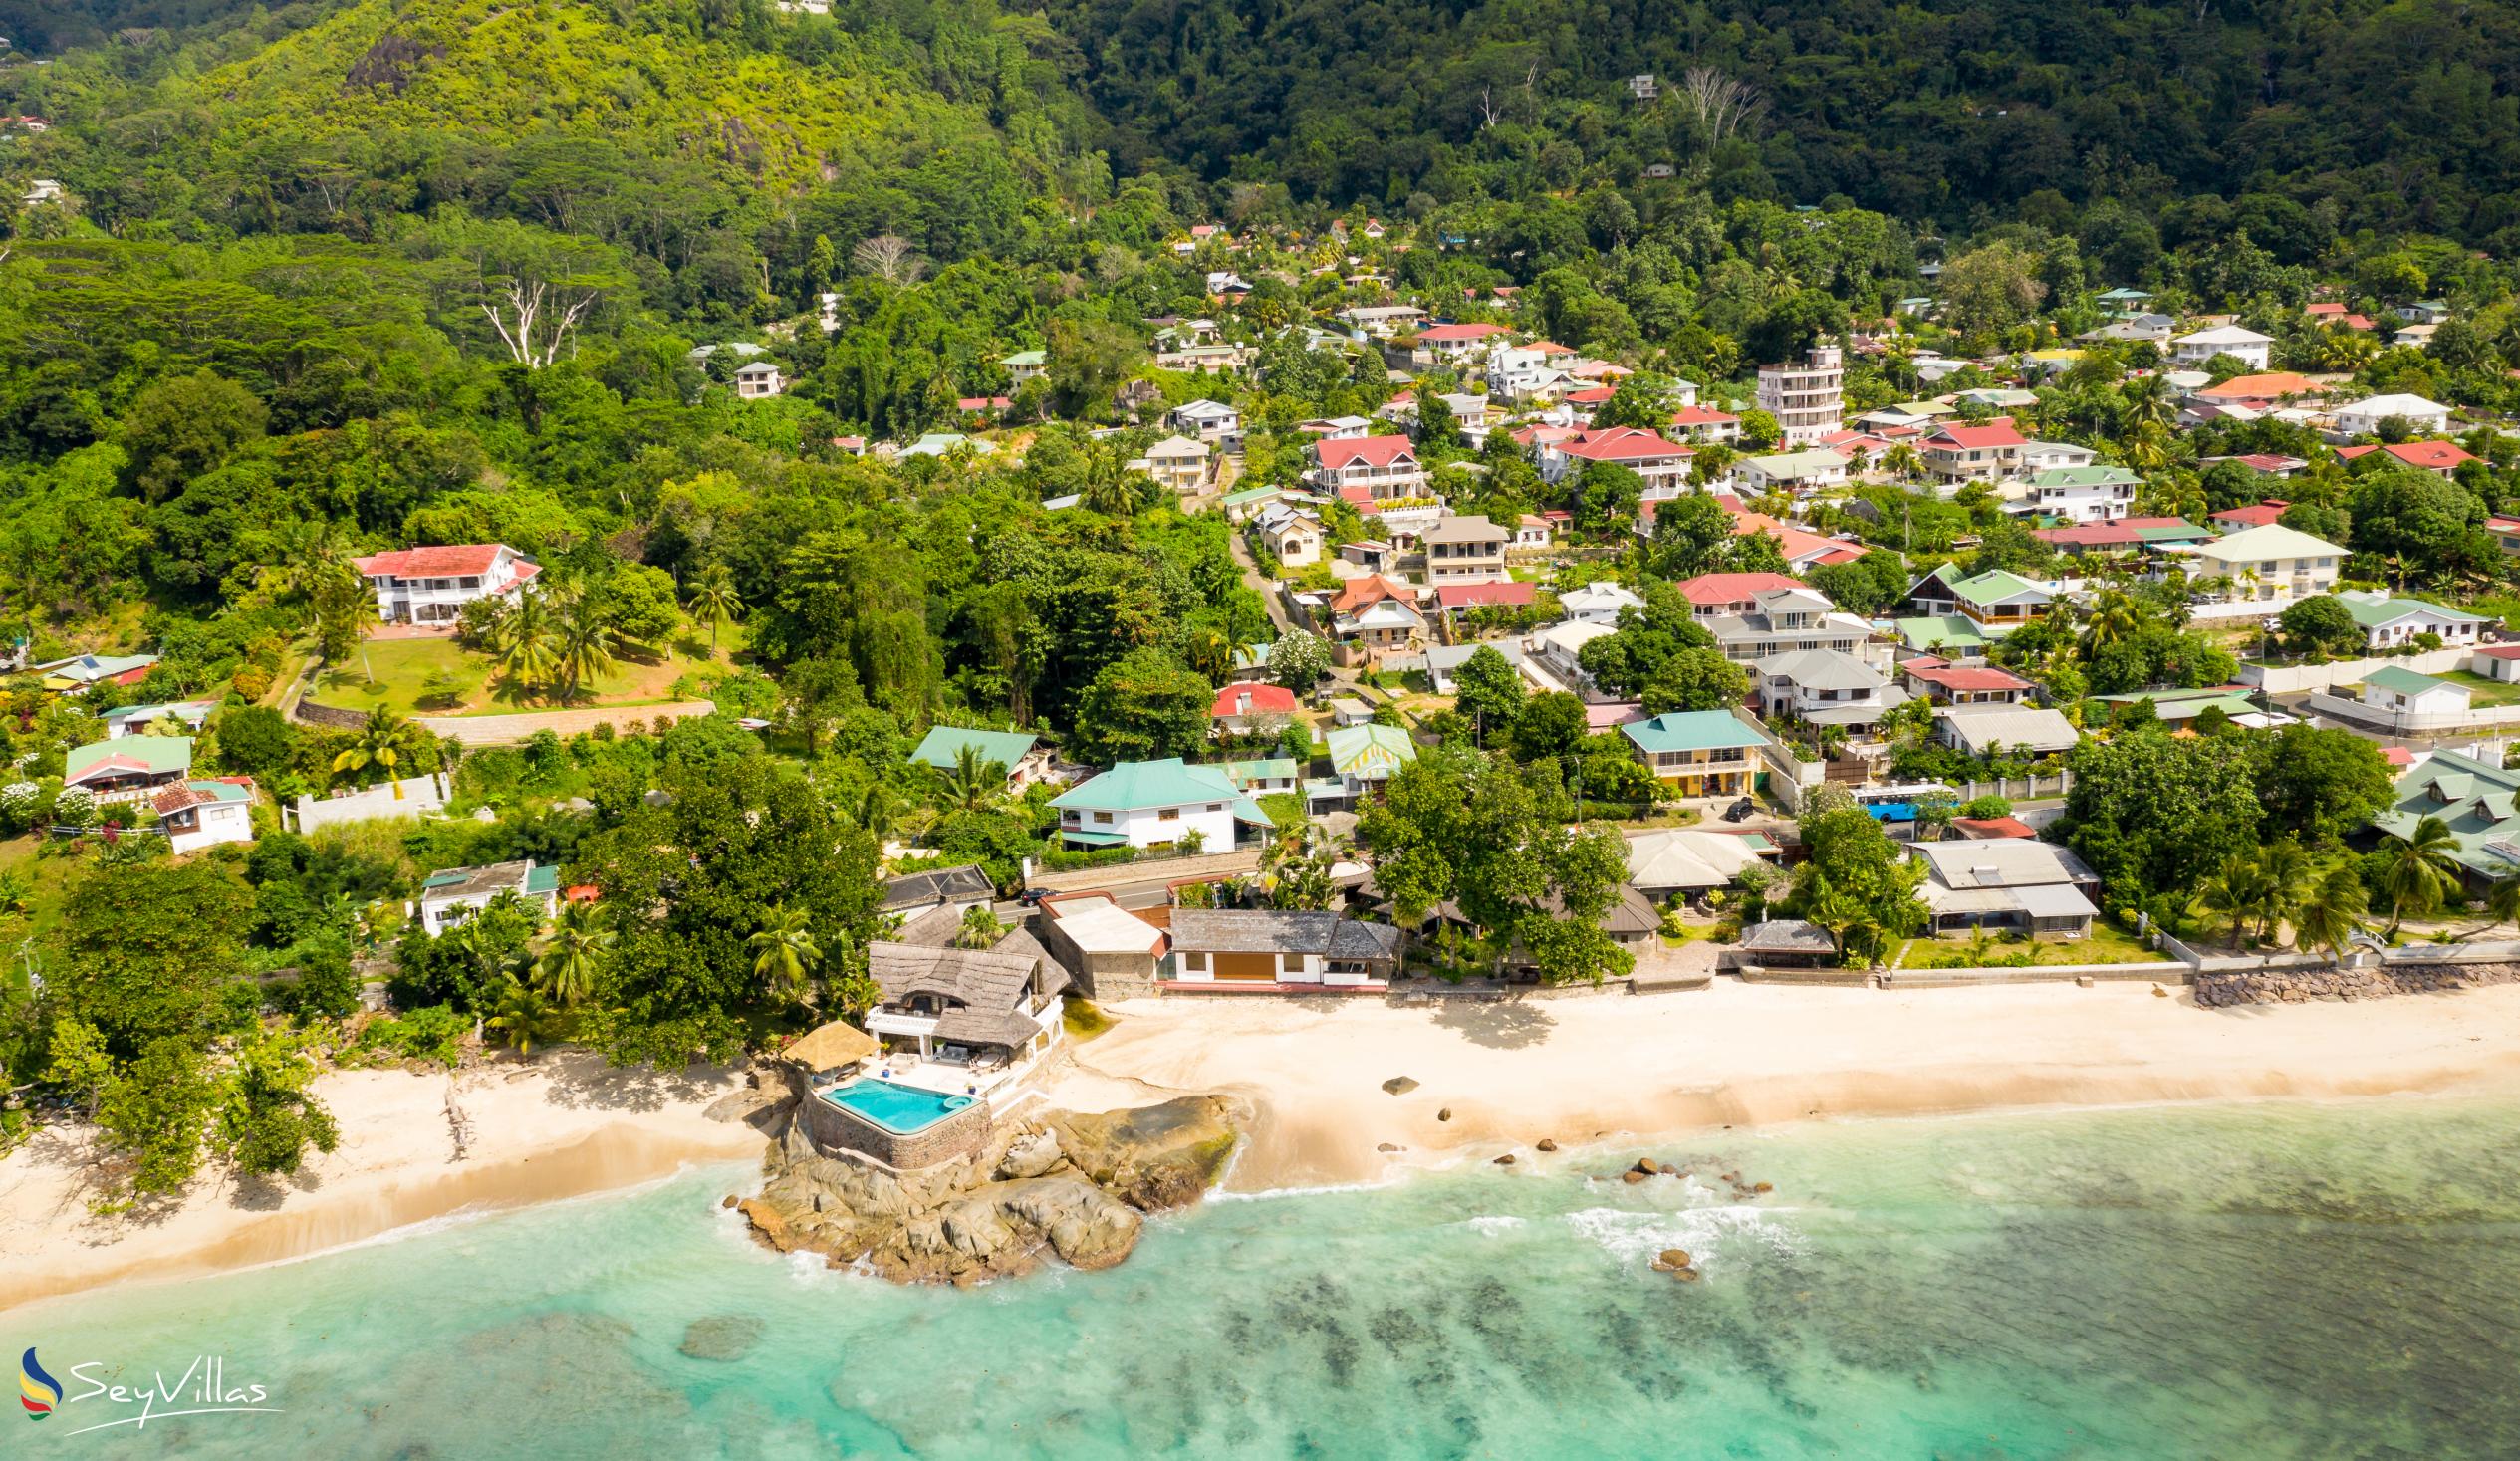 Photo 67: Villa Rousseau - Location - Mahé (Seychelles)